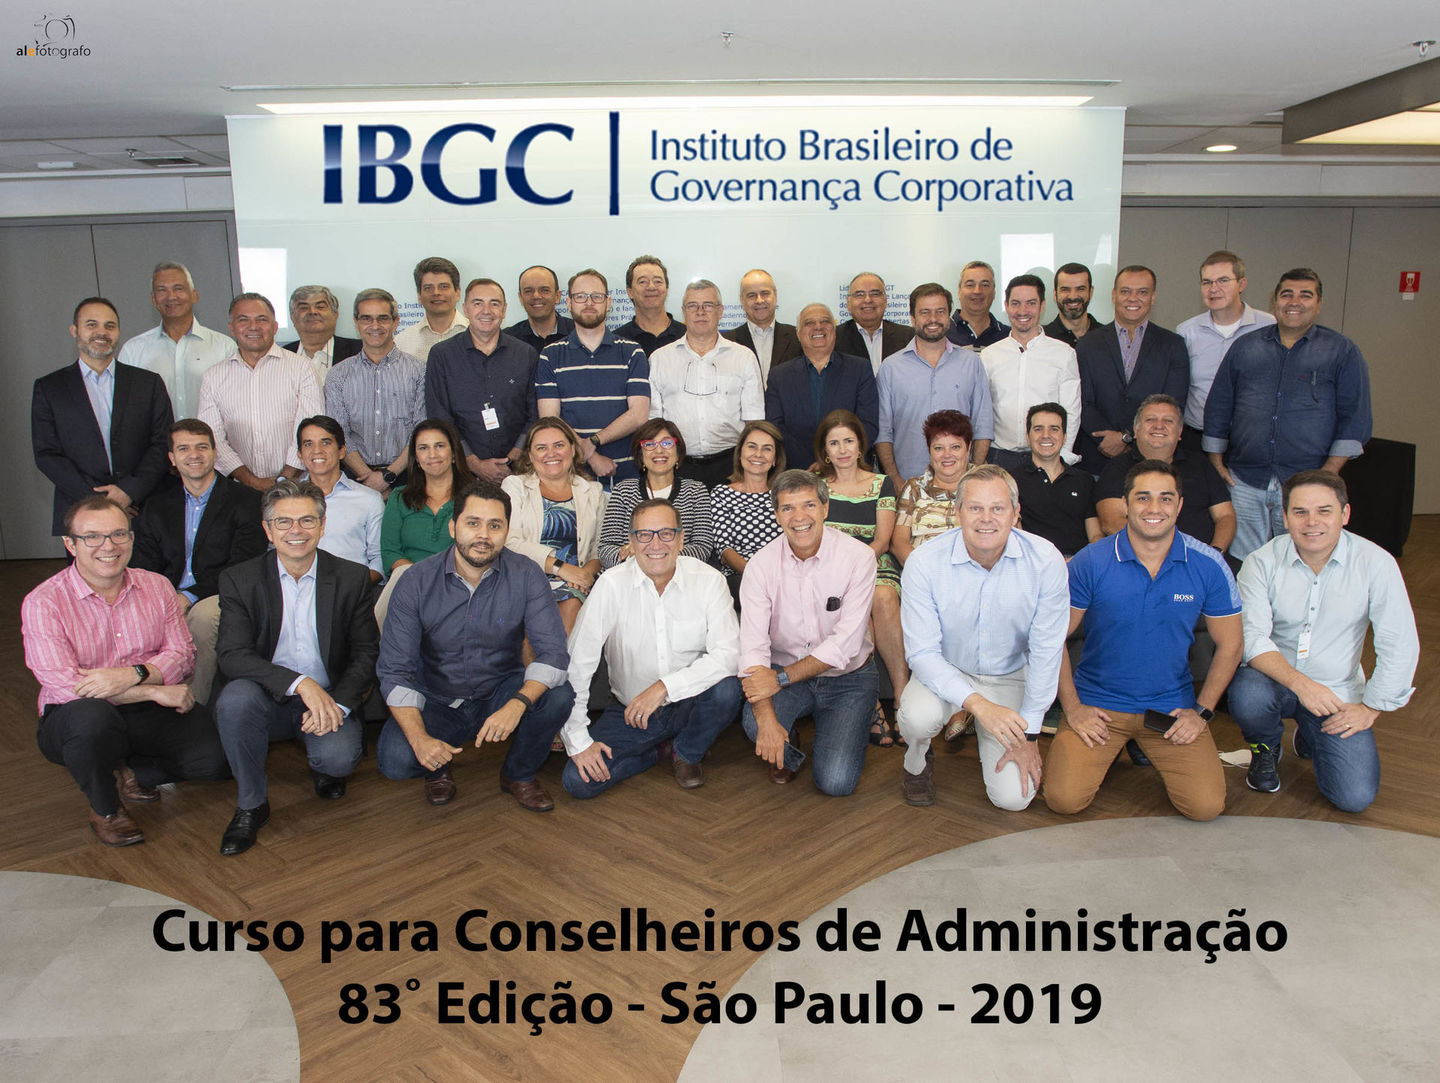 IBGC - Foto de Grupo da 83˚ Edição de Curso de Conselheiros de Administração - São Paulo